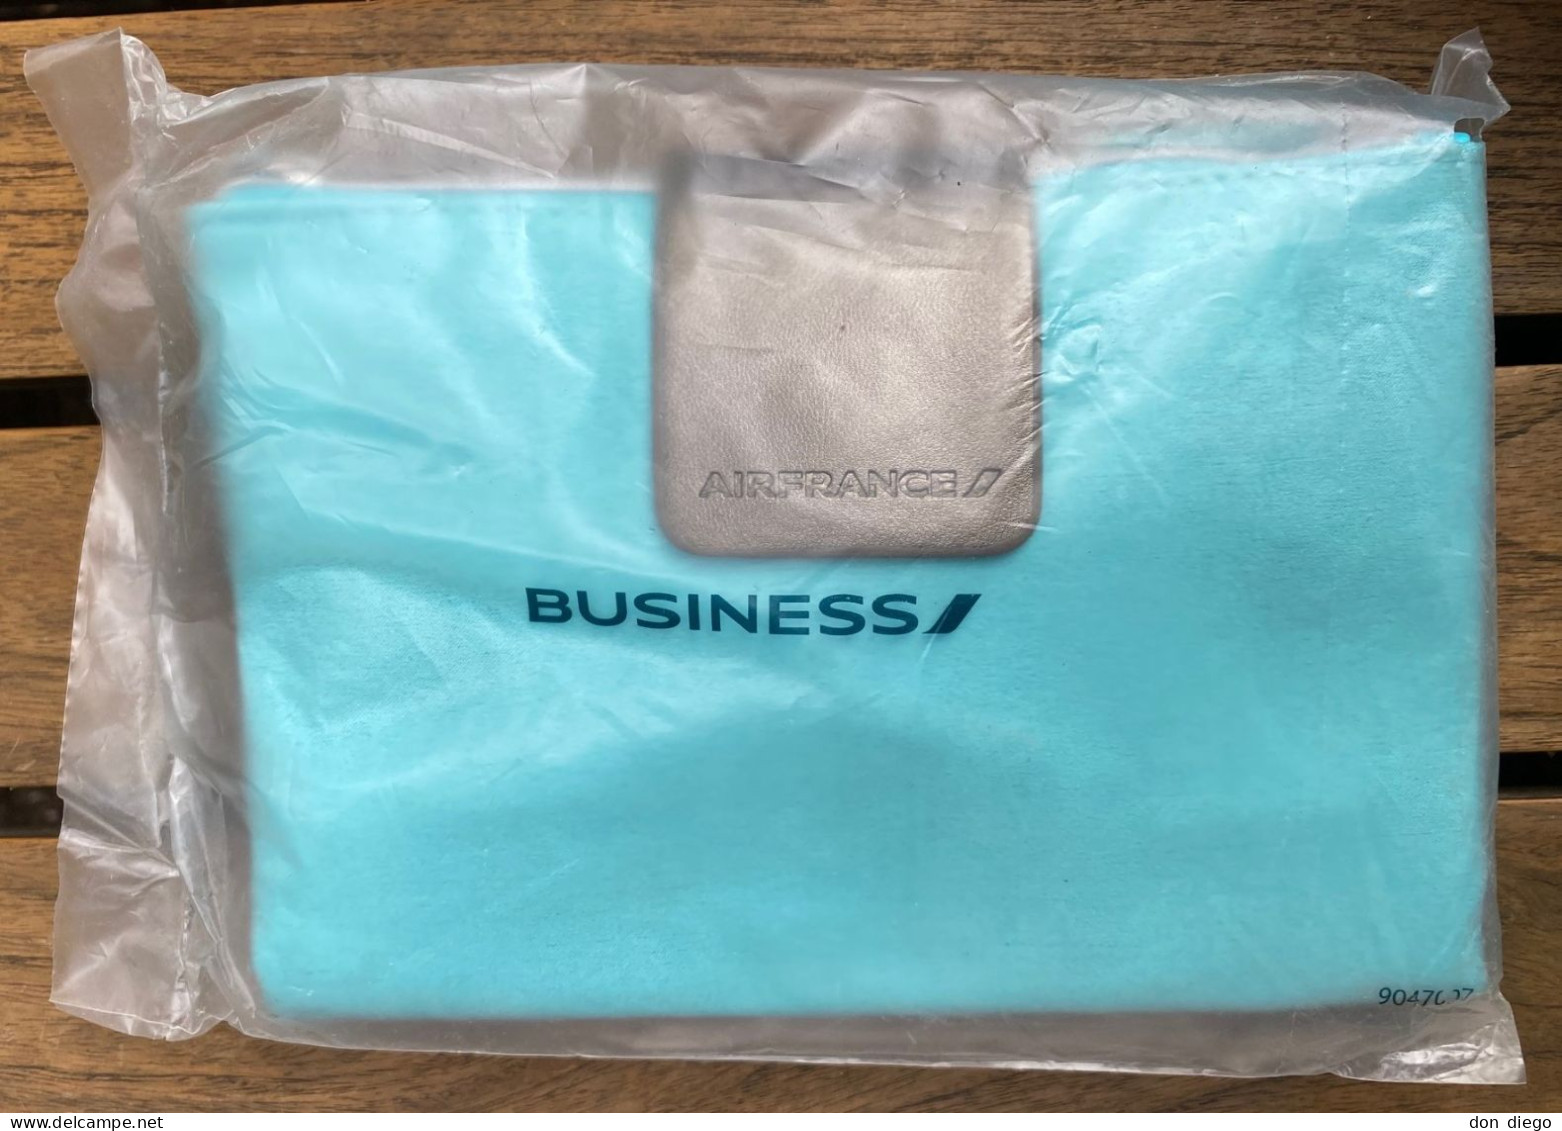 Trousse De Toilette Amenity Kit Bleue Blue Air France Business Class / Contenu Intact / Sous Emballage D'origine Scellé - Regalos